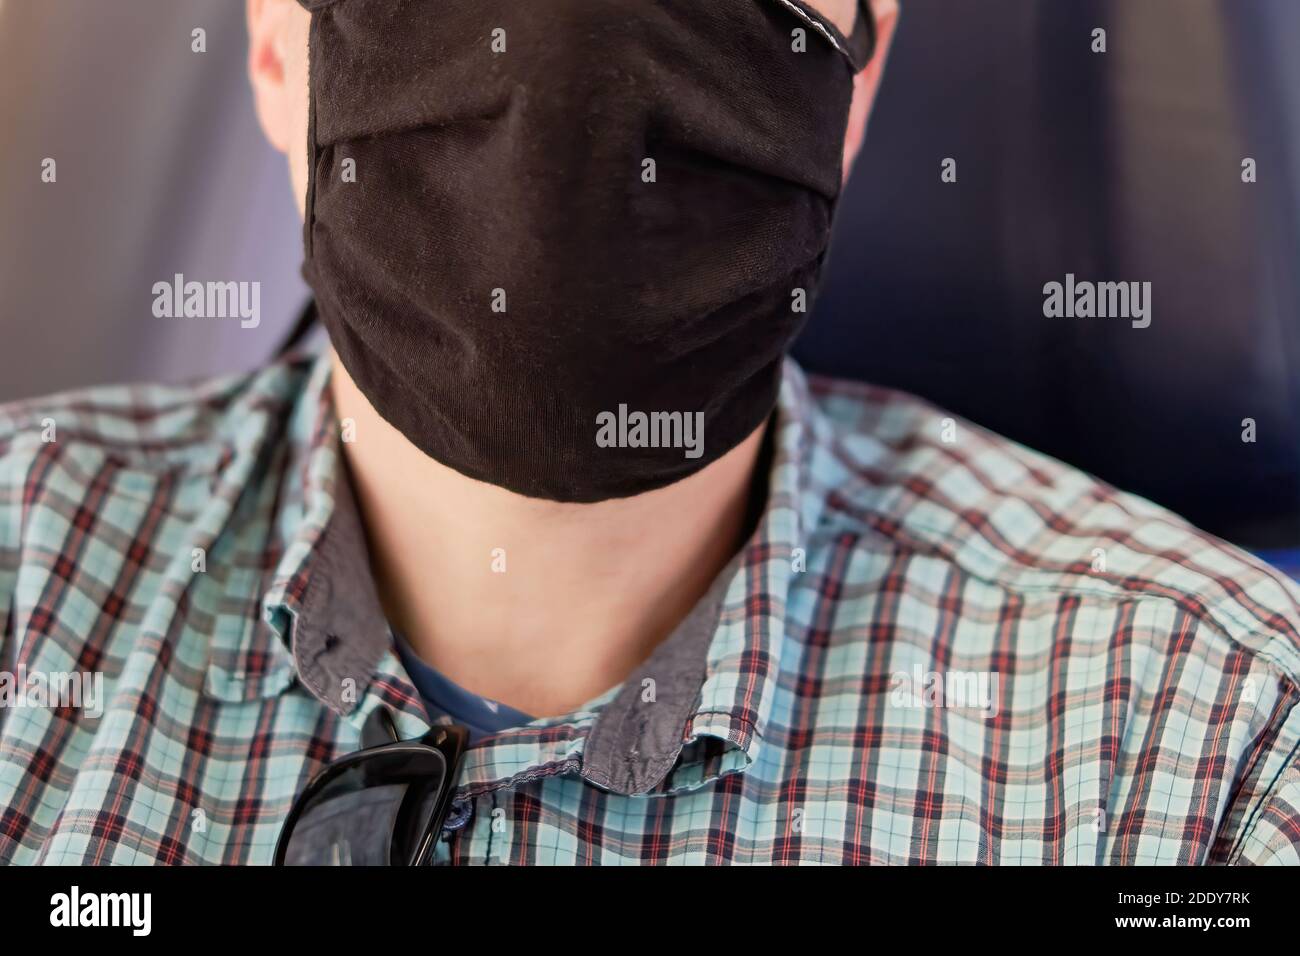 Viso umano con maschera come protezione per bocca e naso come protezione contro corona o covid-19. Foto Stock